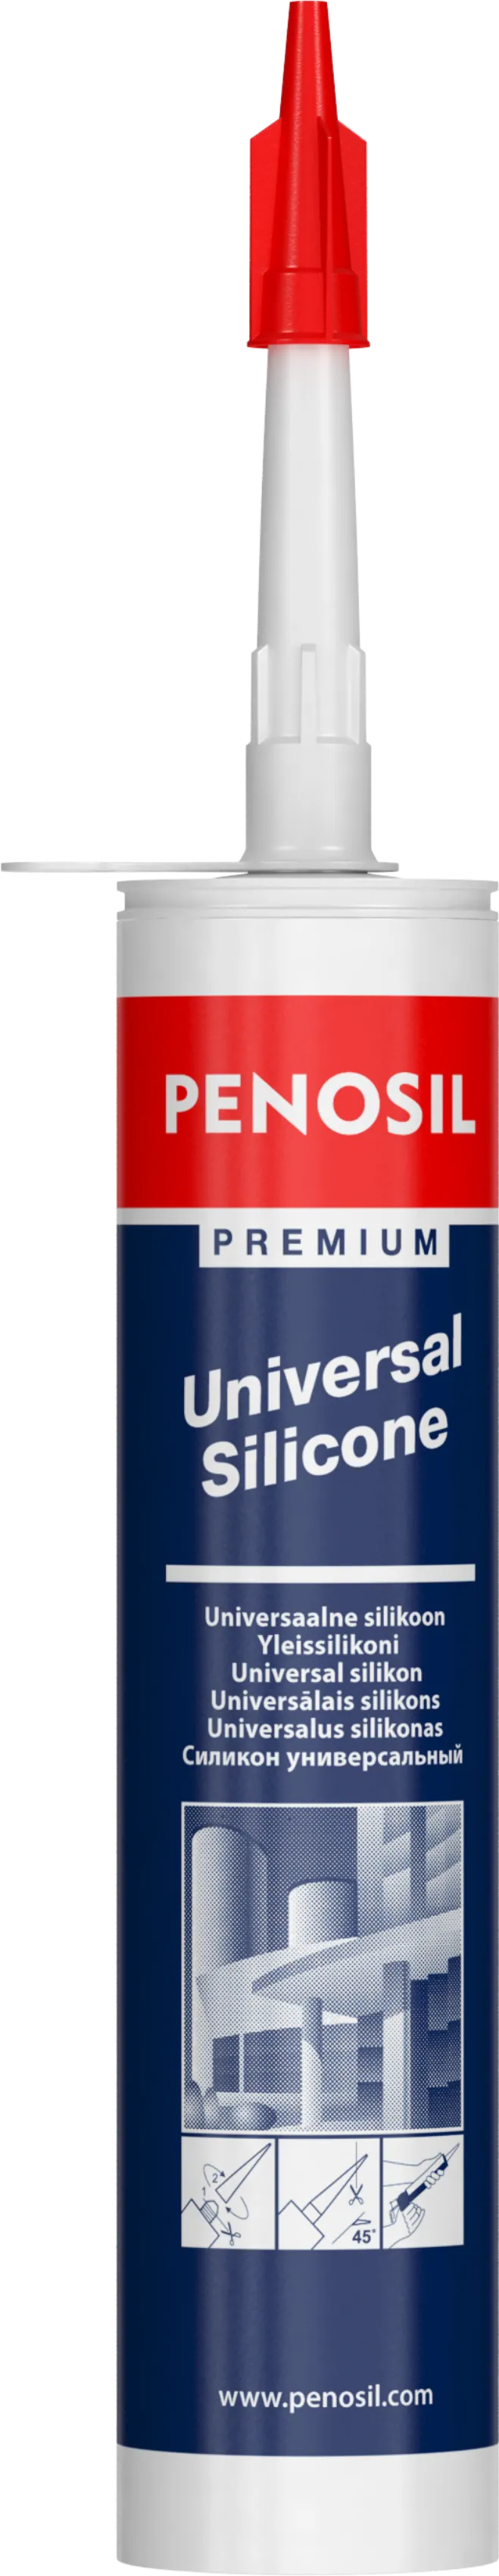 Силикон Penosil Premium Universal Silicone#1